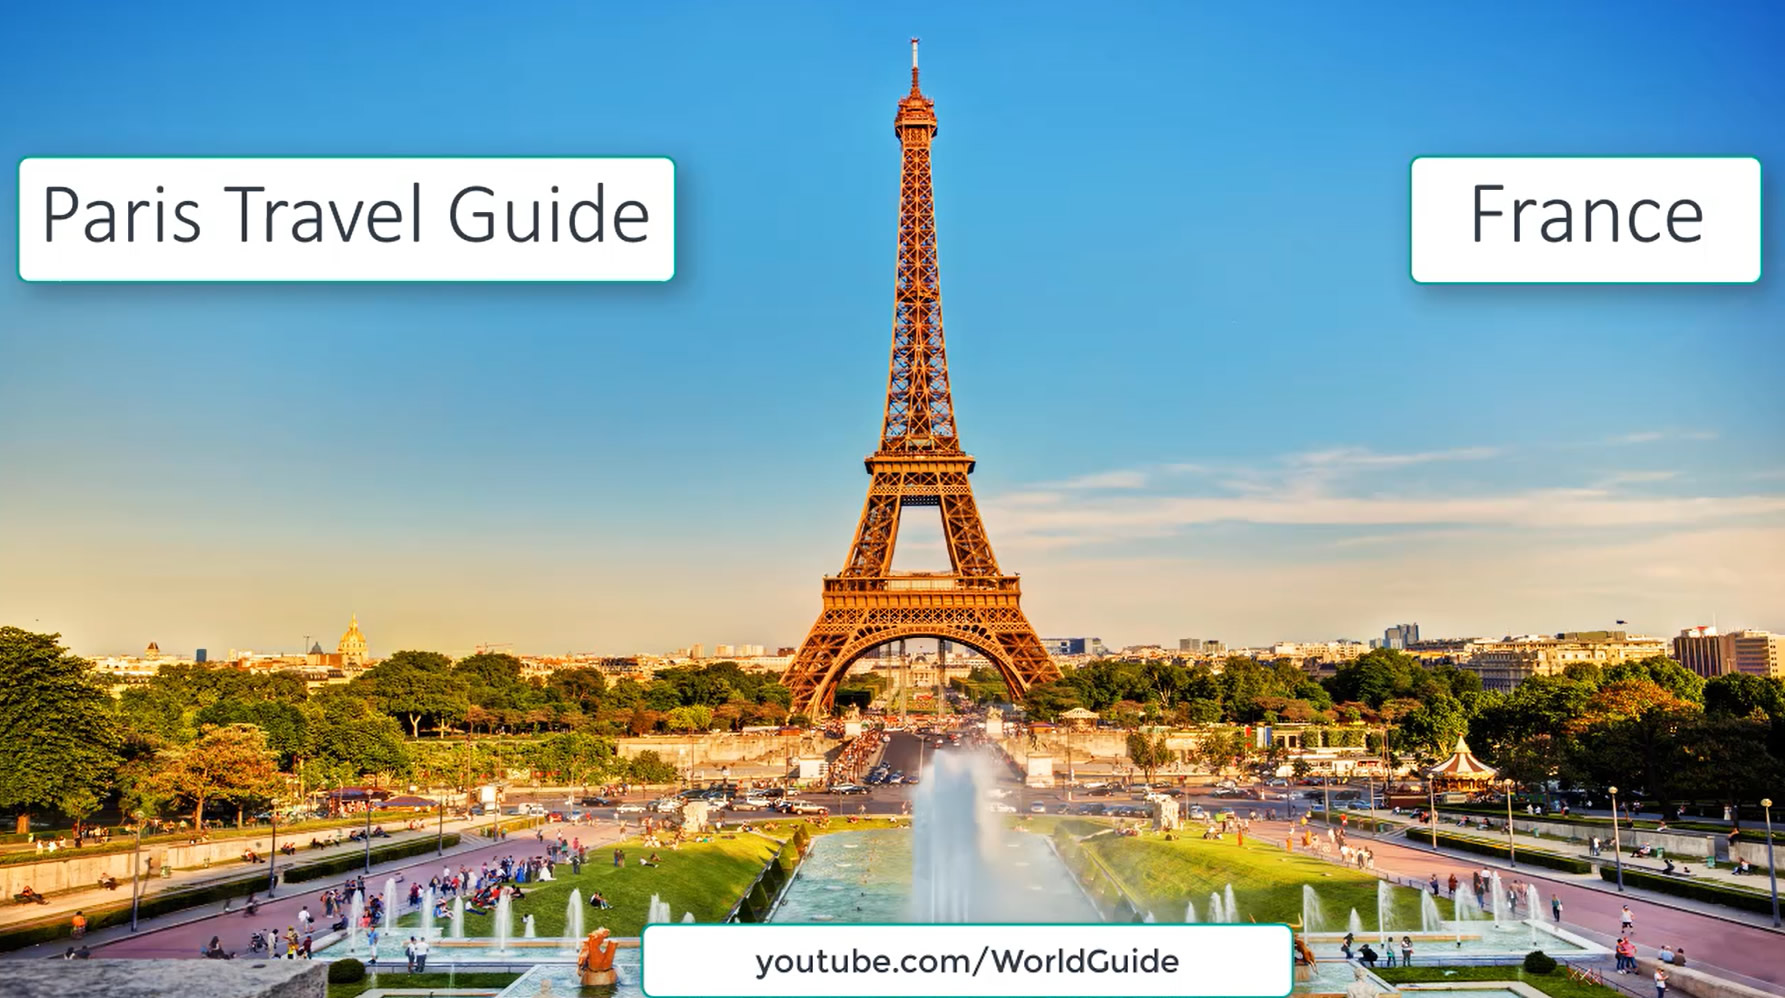 Top 10 Attractions In Paris